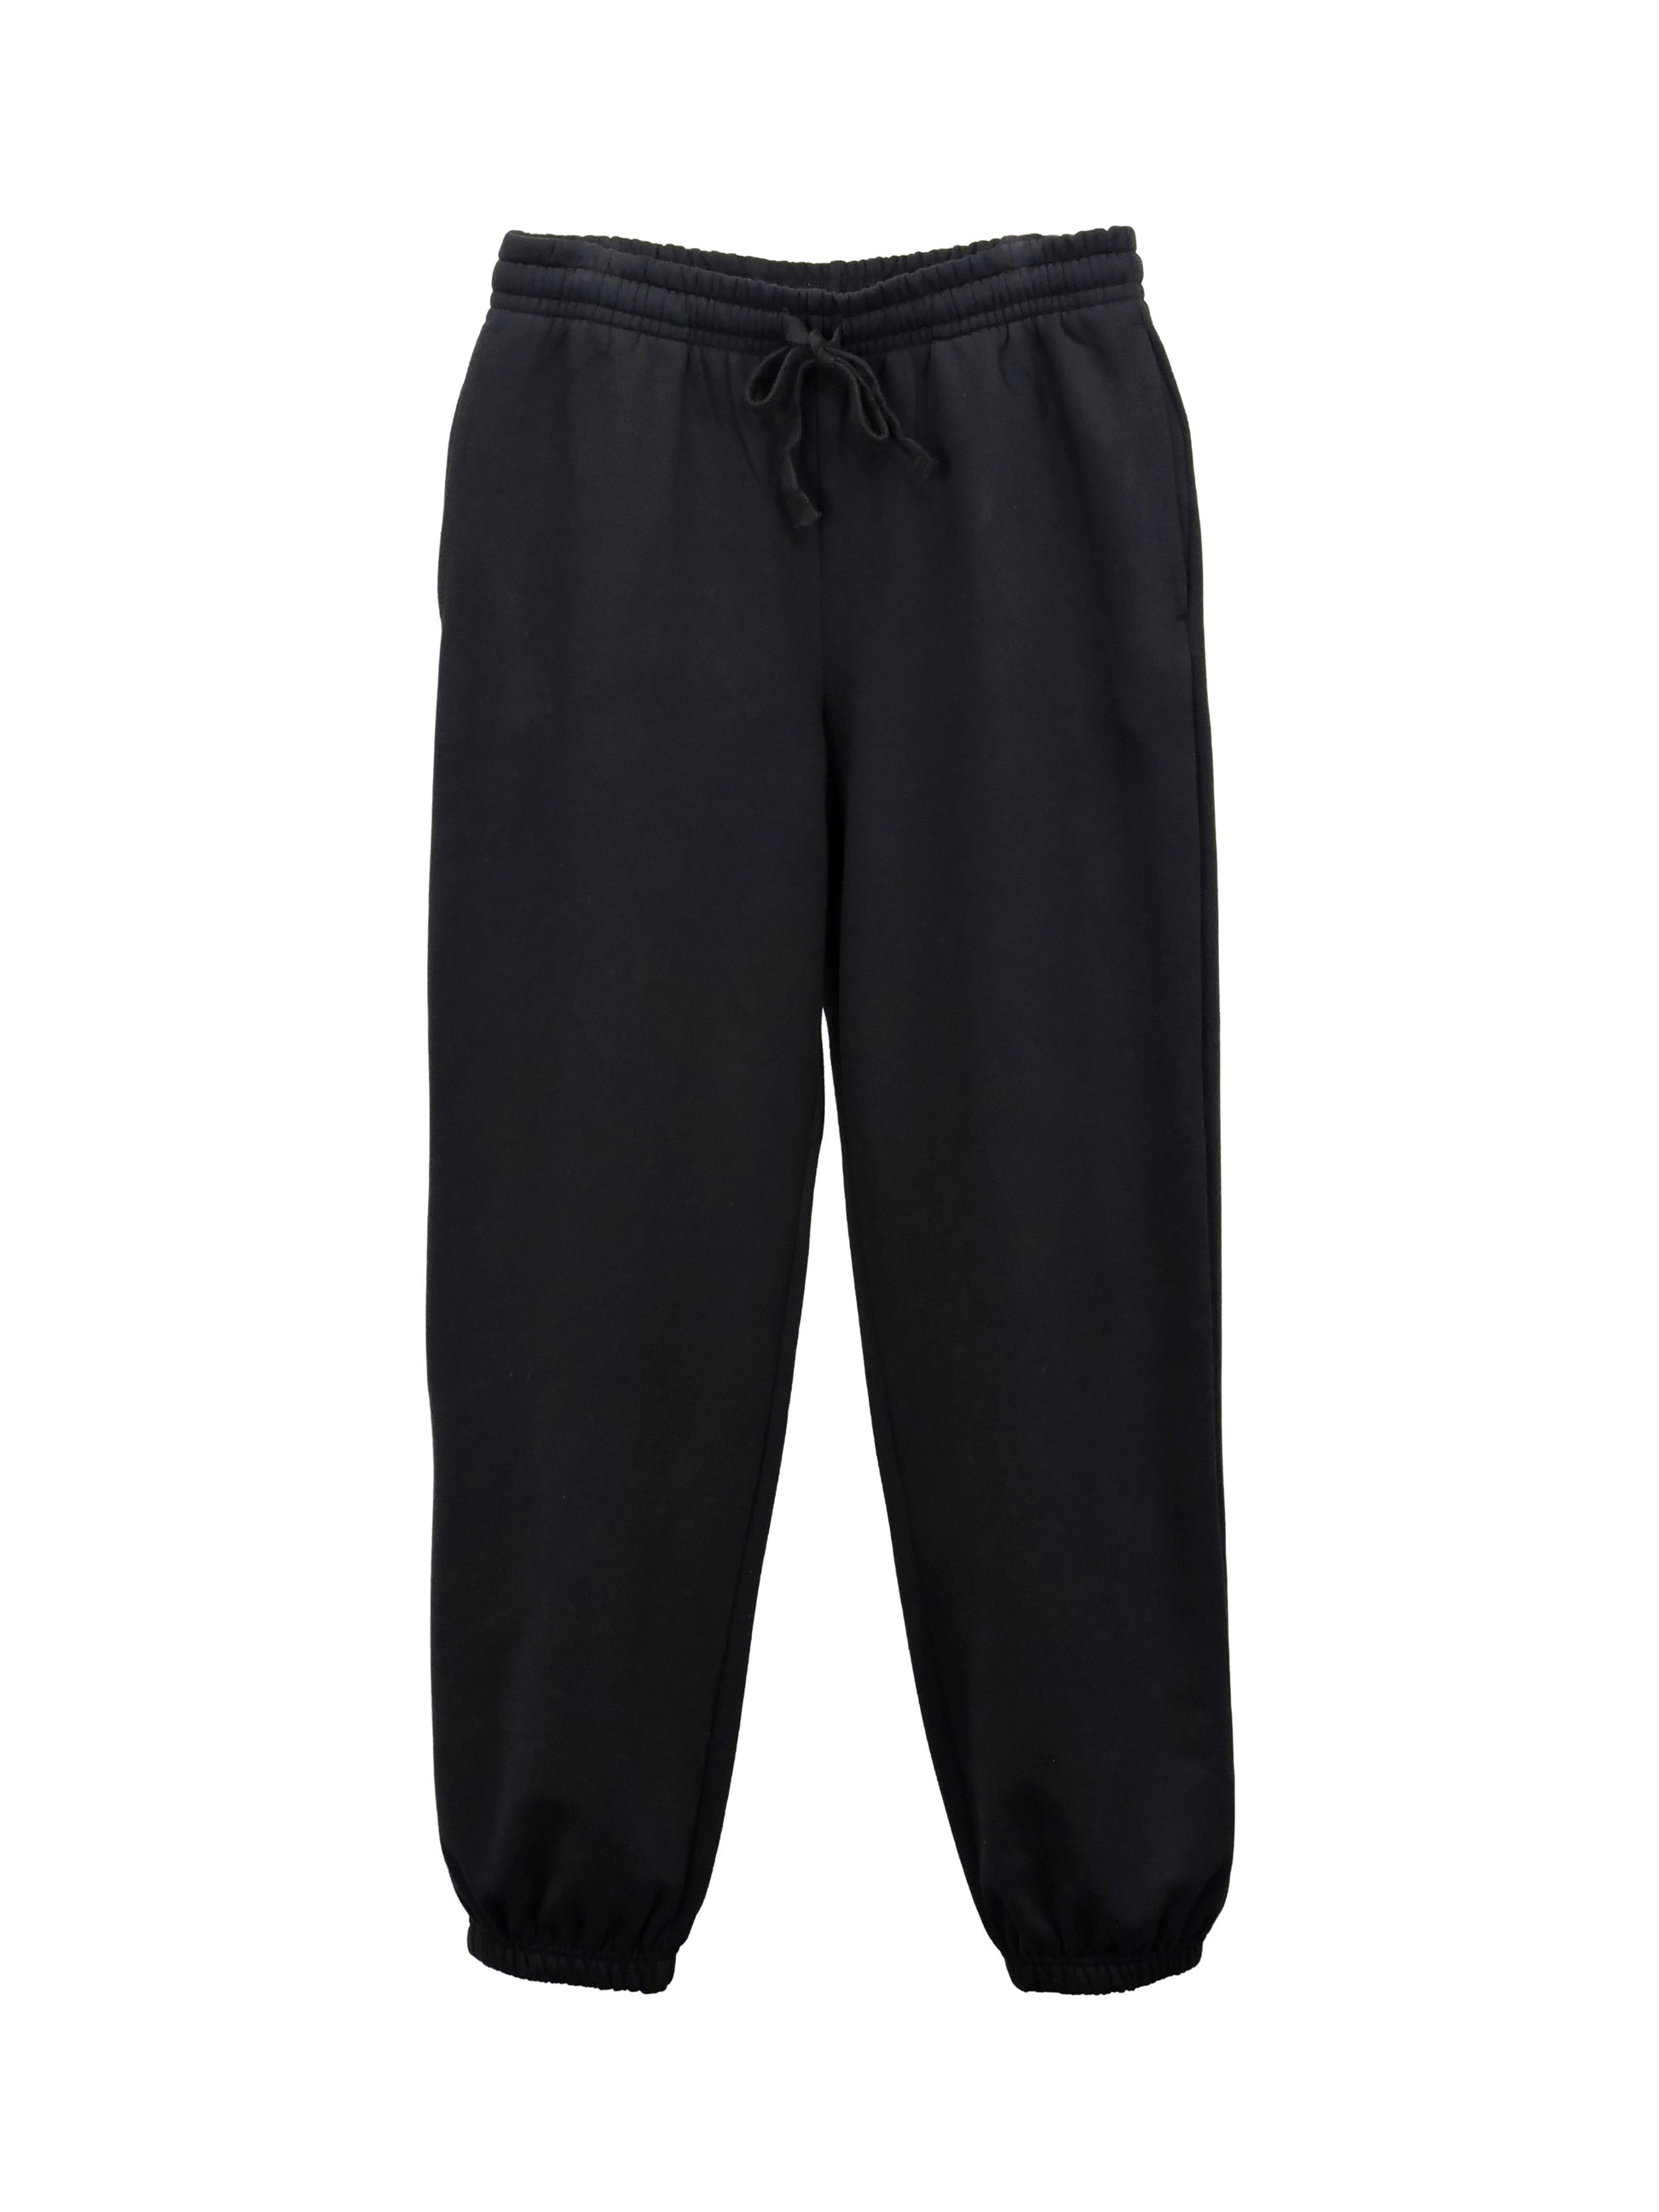 Tek Gear Ultrasoft Fleece Mens Sweatpants Black Size S